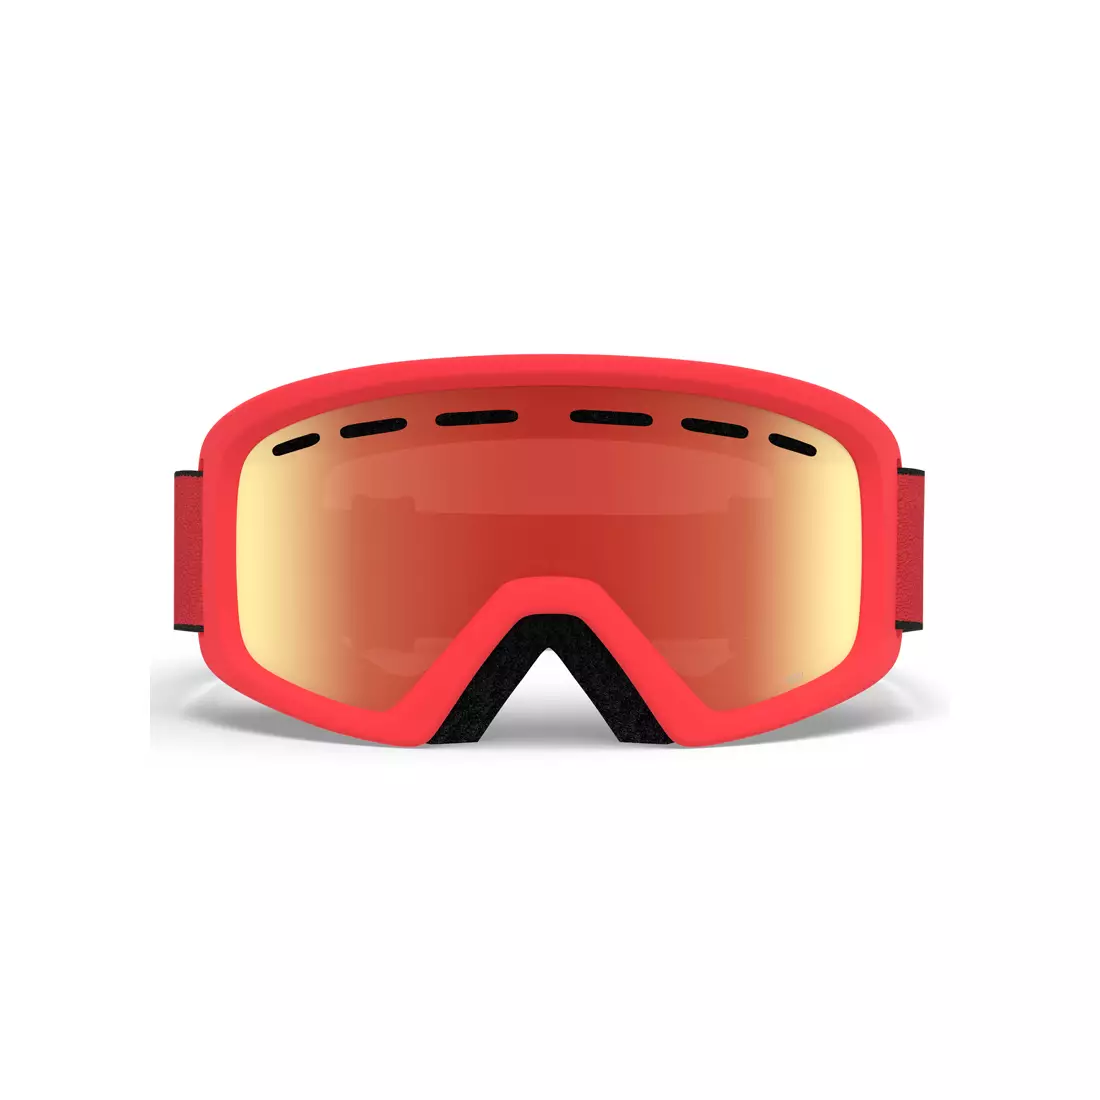 Junior ski / snowboard goggles REV RED BLACK ZOOM GR-7094700